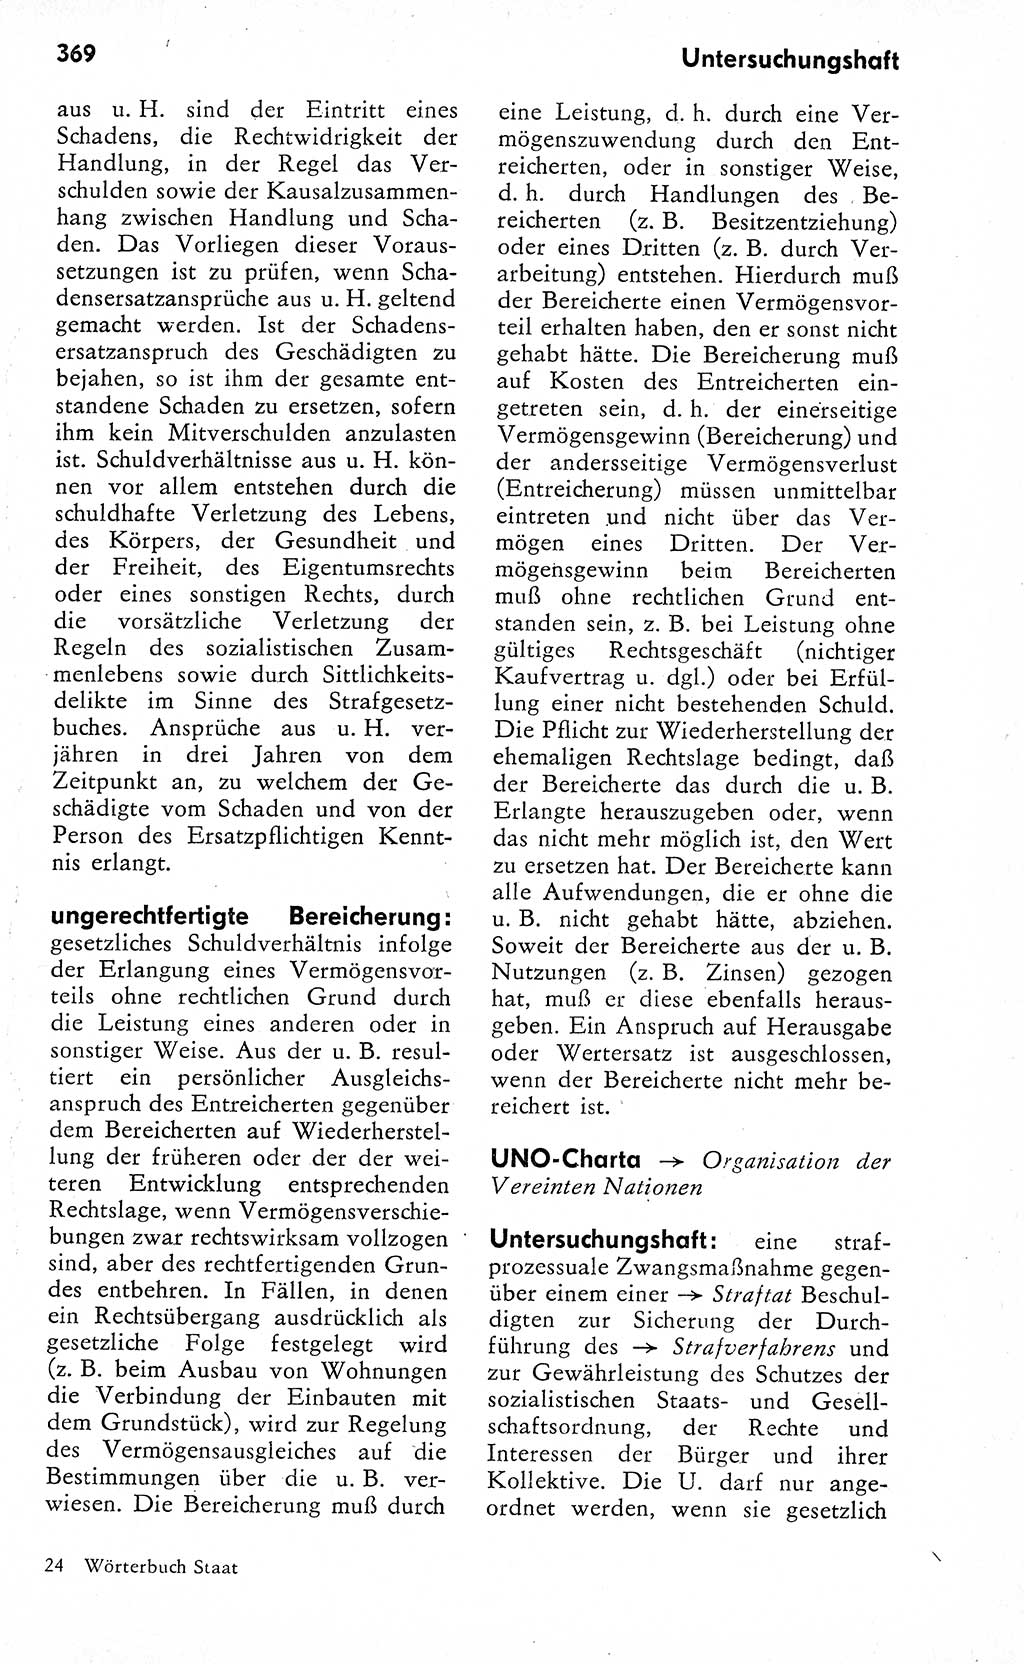 Wörterbuch zum sozialistischen Staat [Deutsche Demokratische Republik (DDR)] 1974, Seite 369 (Wb. soz. St. DDR 1974, S. 369)